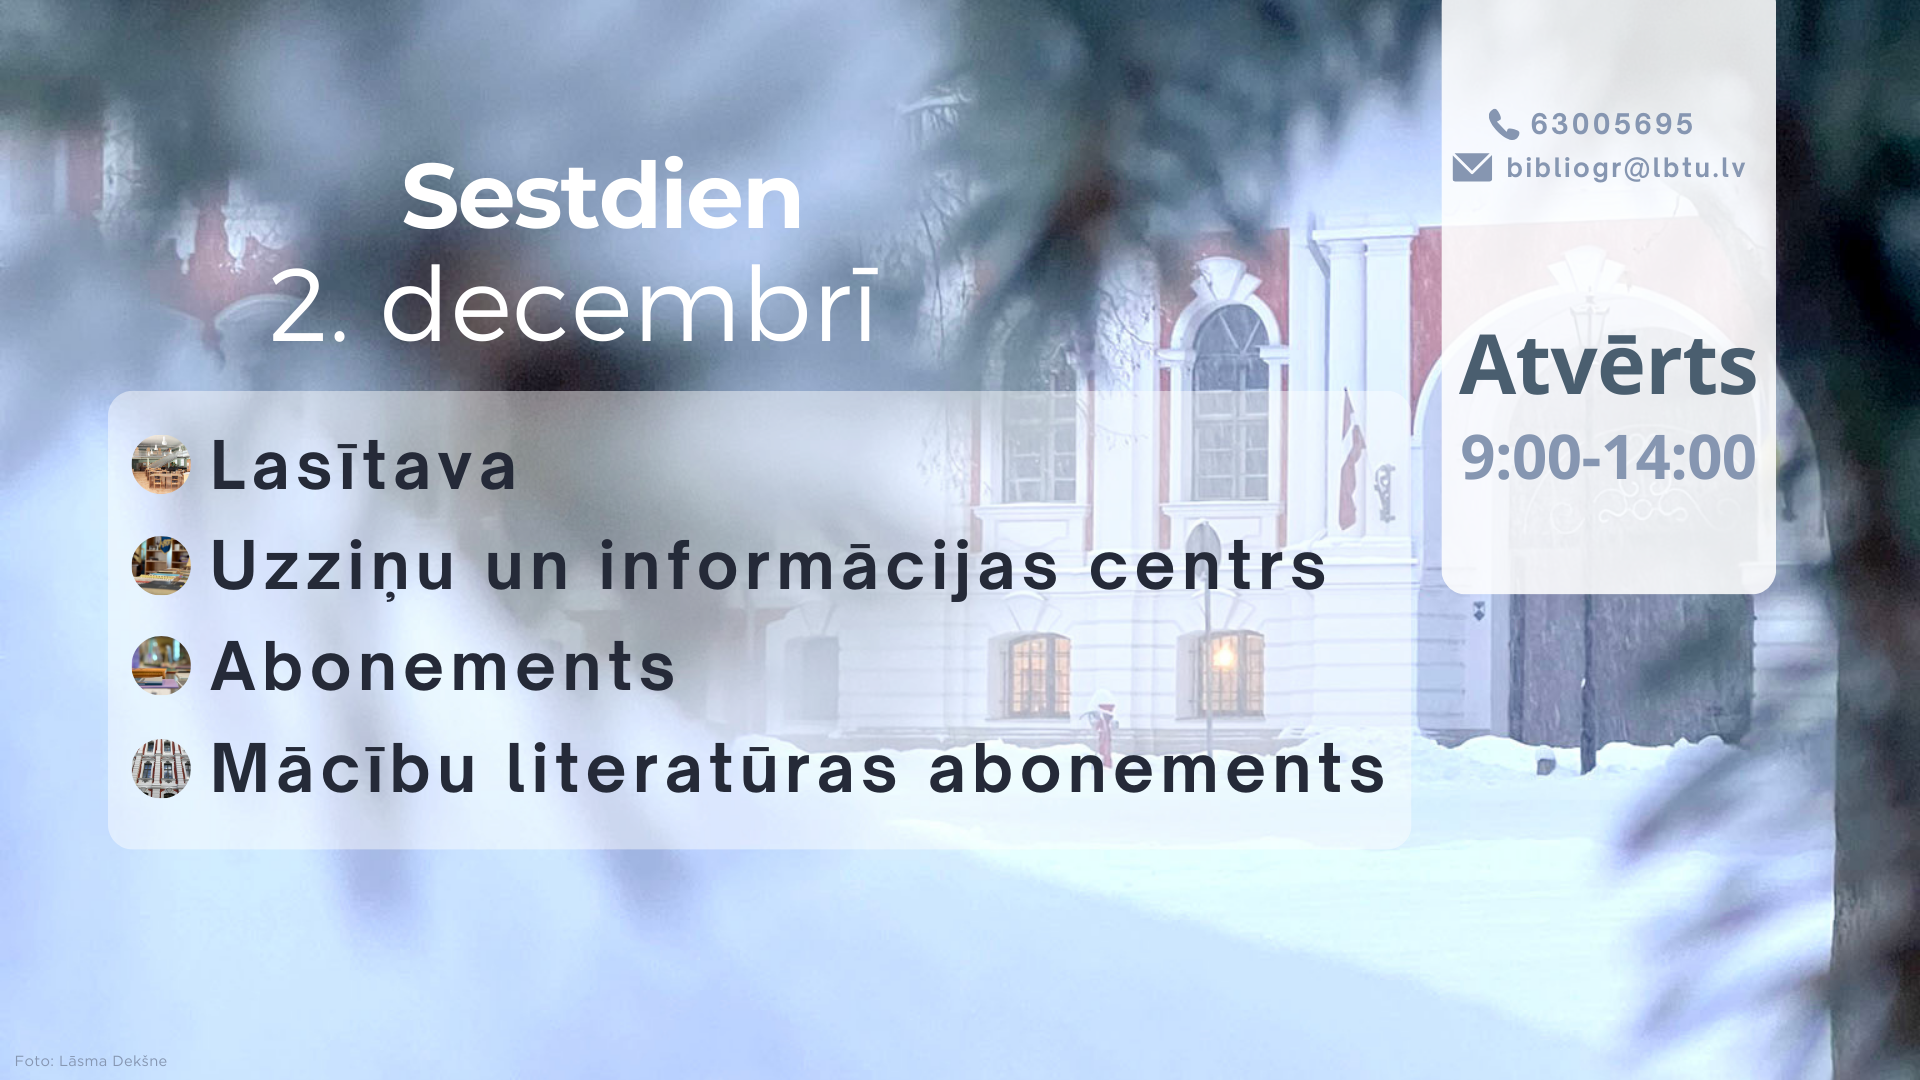 Sestdien, 2. decembrī, LBTU Fundamentālā bibliotēka lasītājiem atvērta no plkst. 9.00 līdz 14.00.